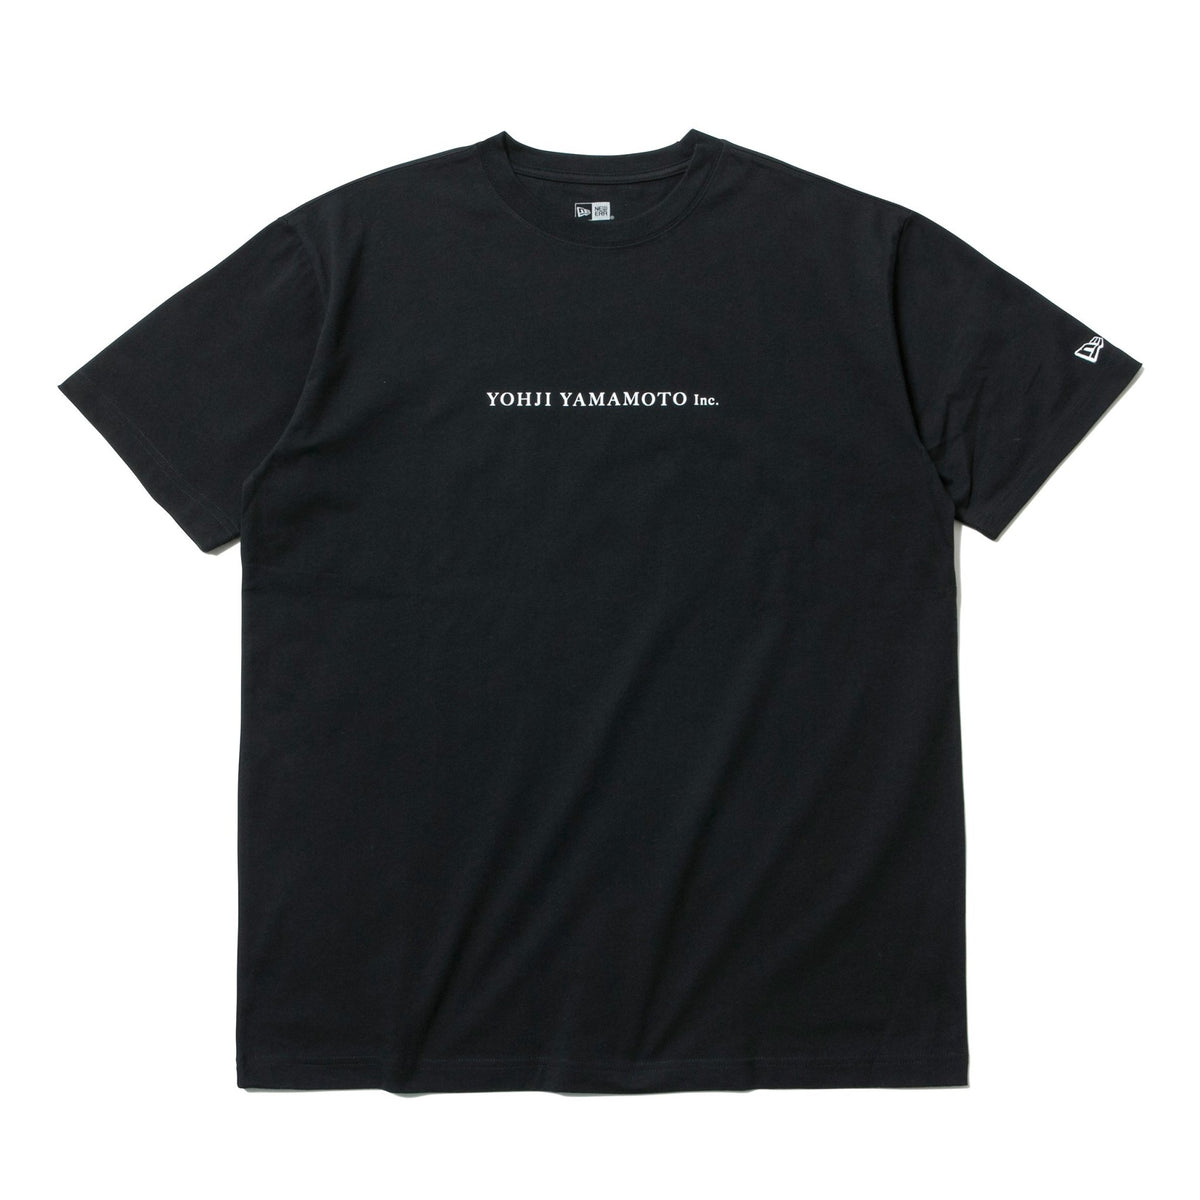 コットン Tシャツ SS20 Yohji Yamamoto Inc. ブラック | ニューエラ 